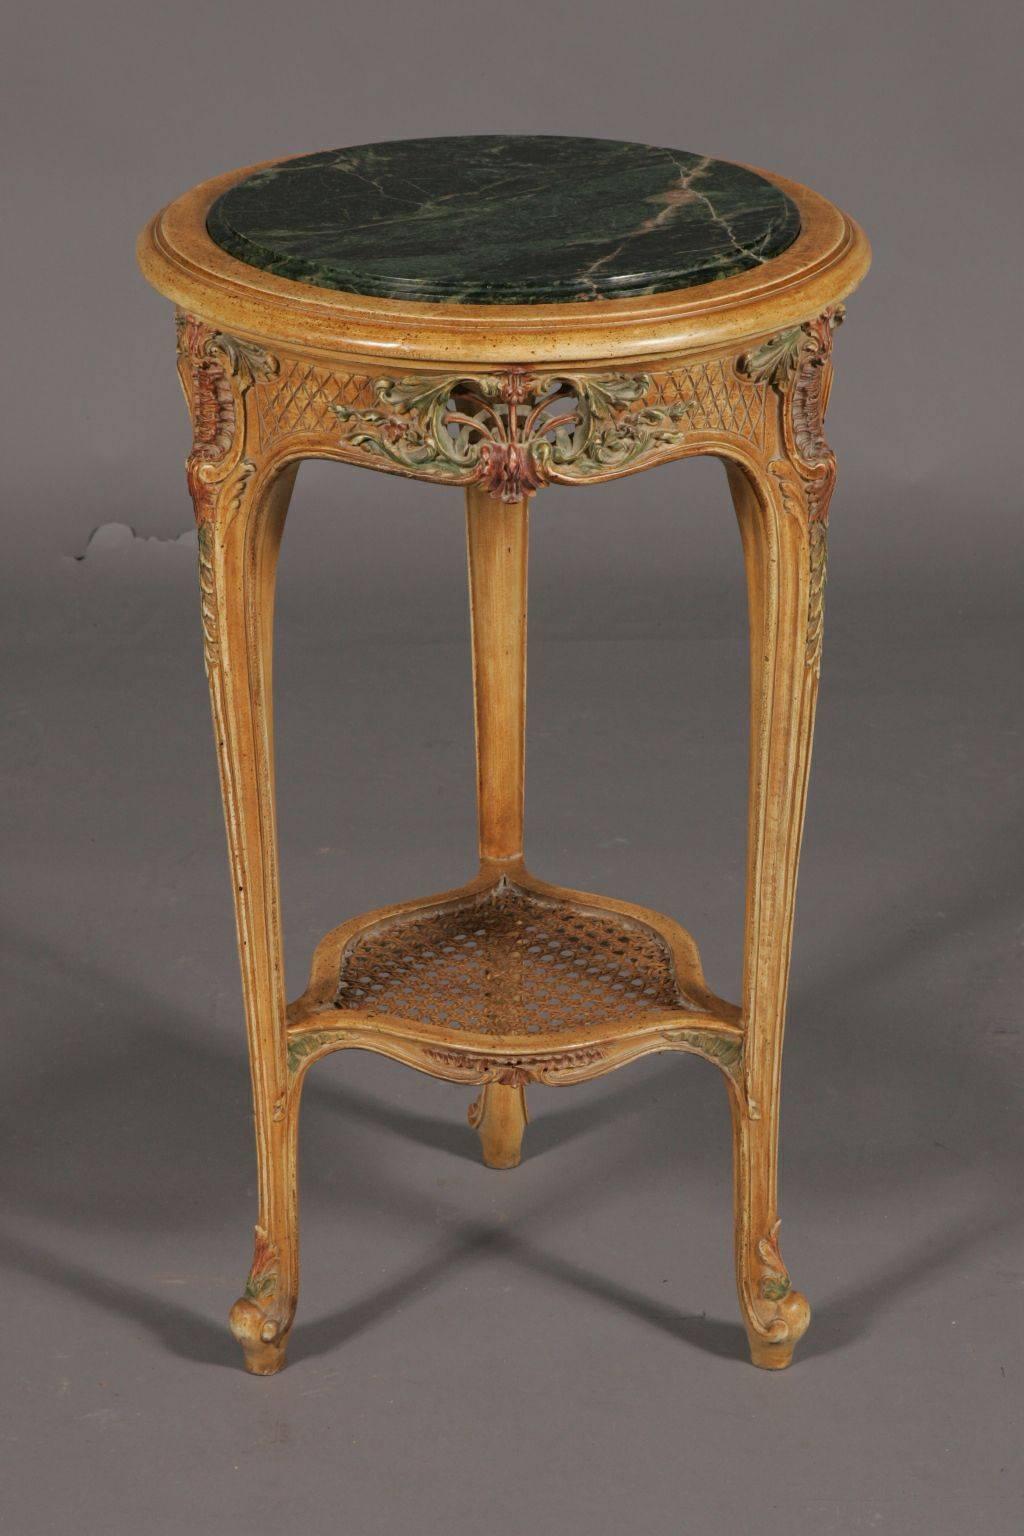 Ausgezeichneter französischer Beistelltisch im Stil Louis XV.
Hochwertiges massives Buchenholz, das bis ins kleinste Detail geschnitzt ist. Farbige Intarsien und Vergoldung.

(G-Sam-25).